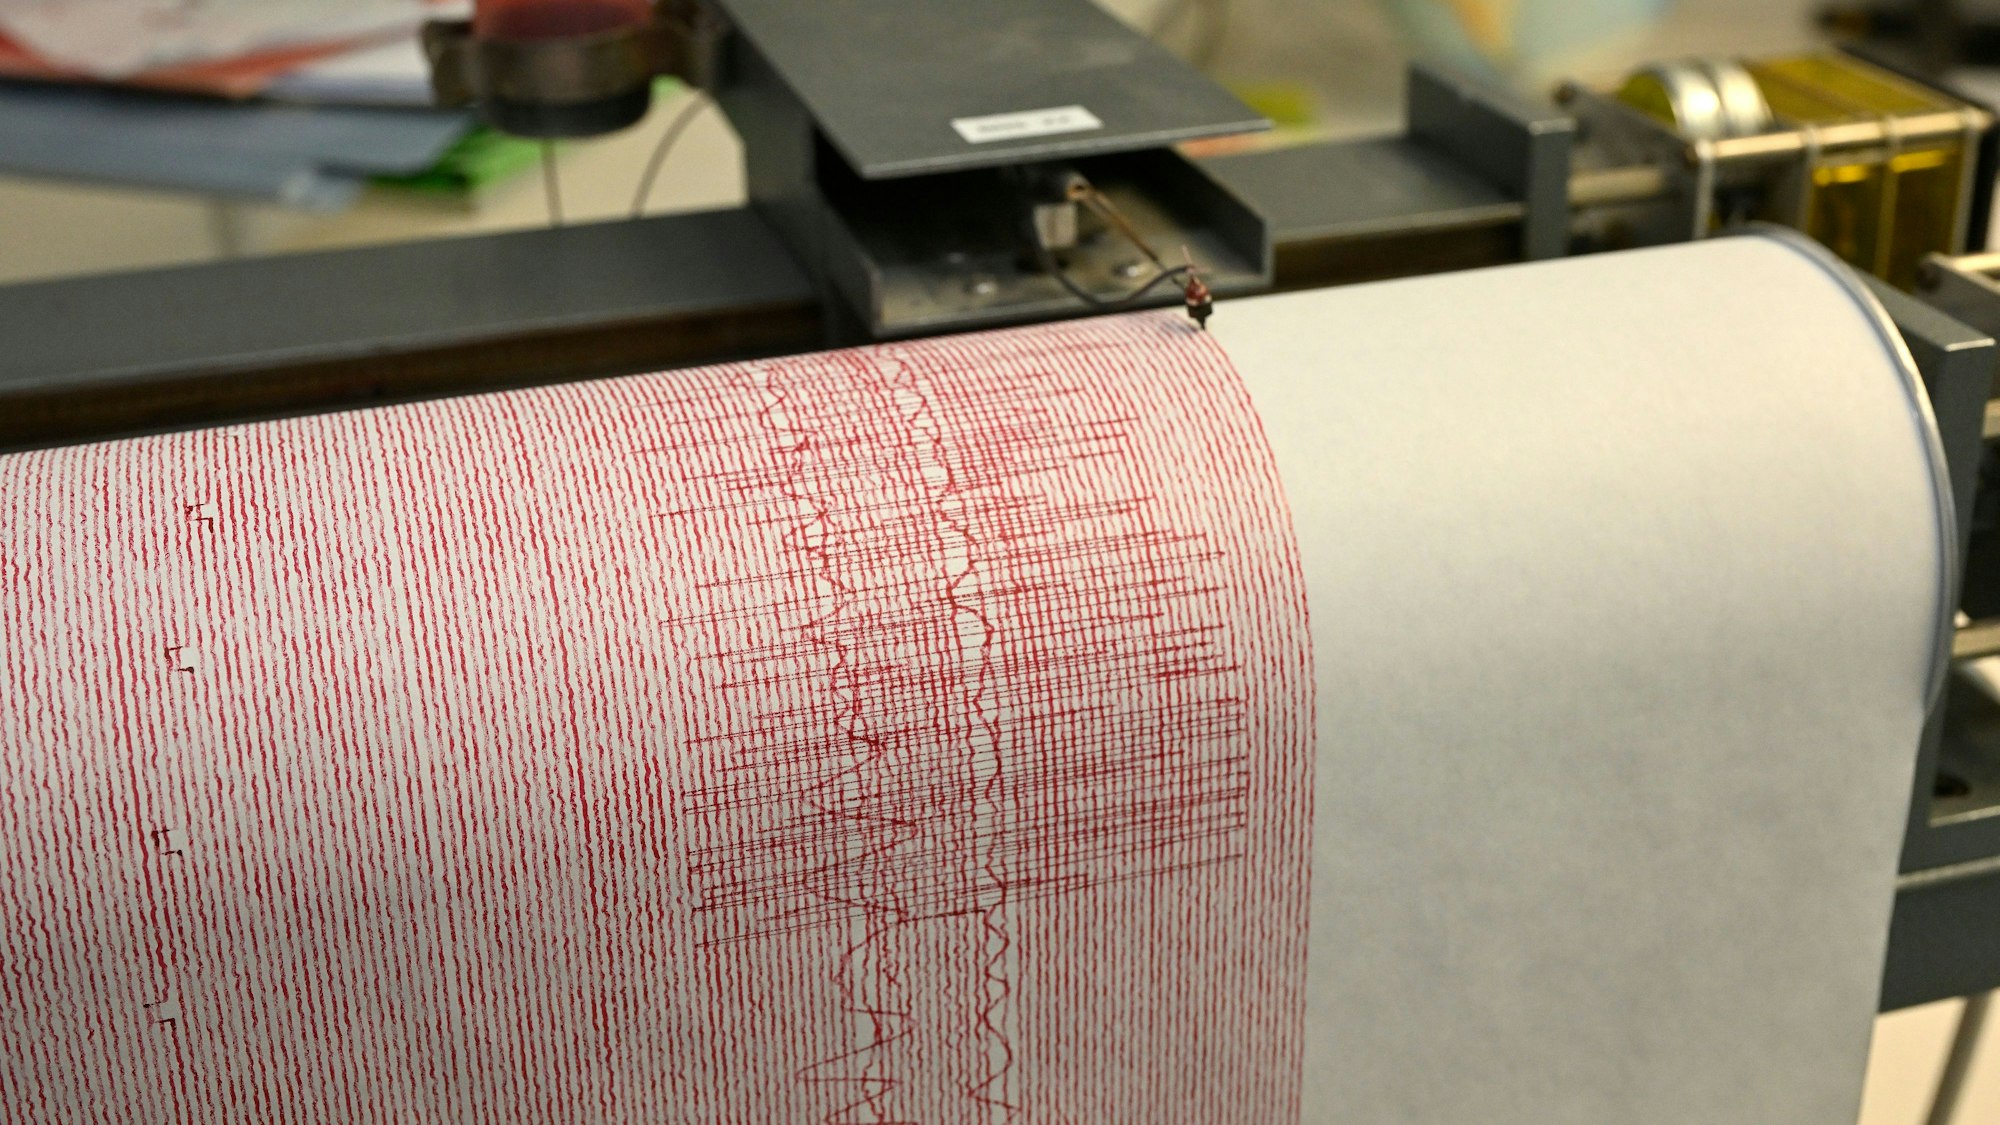 Kräftige Ausschläge sind auf einem Seismographen der Erdbebenstation Bensberg zu sehen.